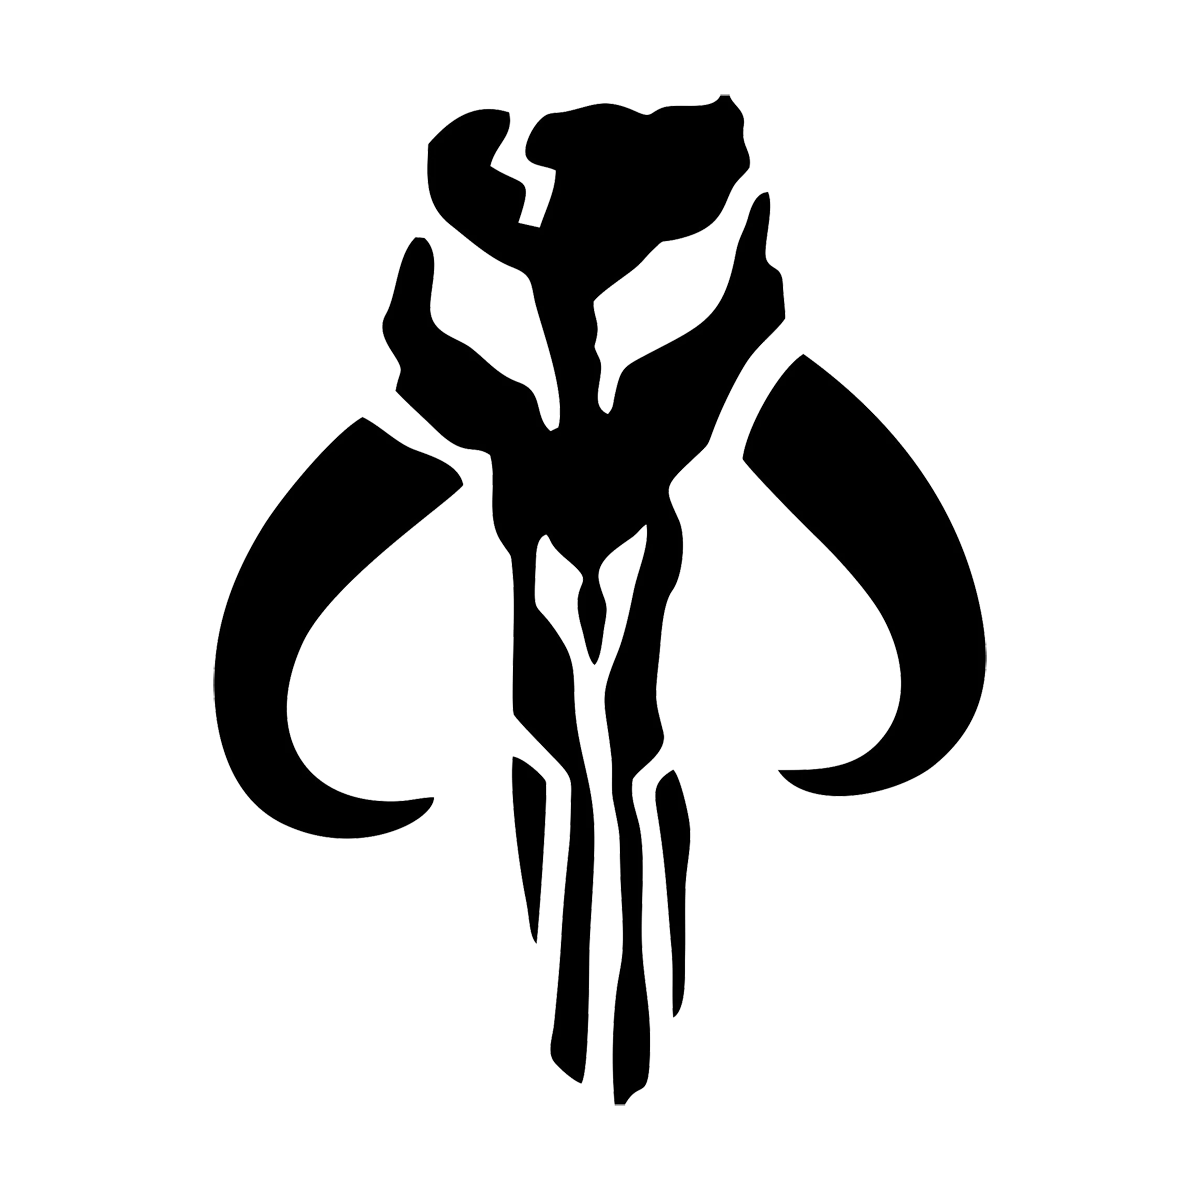 Star Wars Mandalorian Mythosaur Emblem PNG